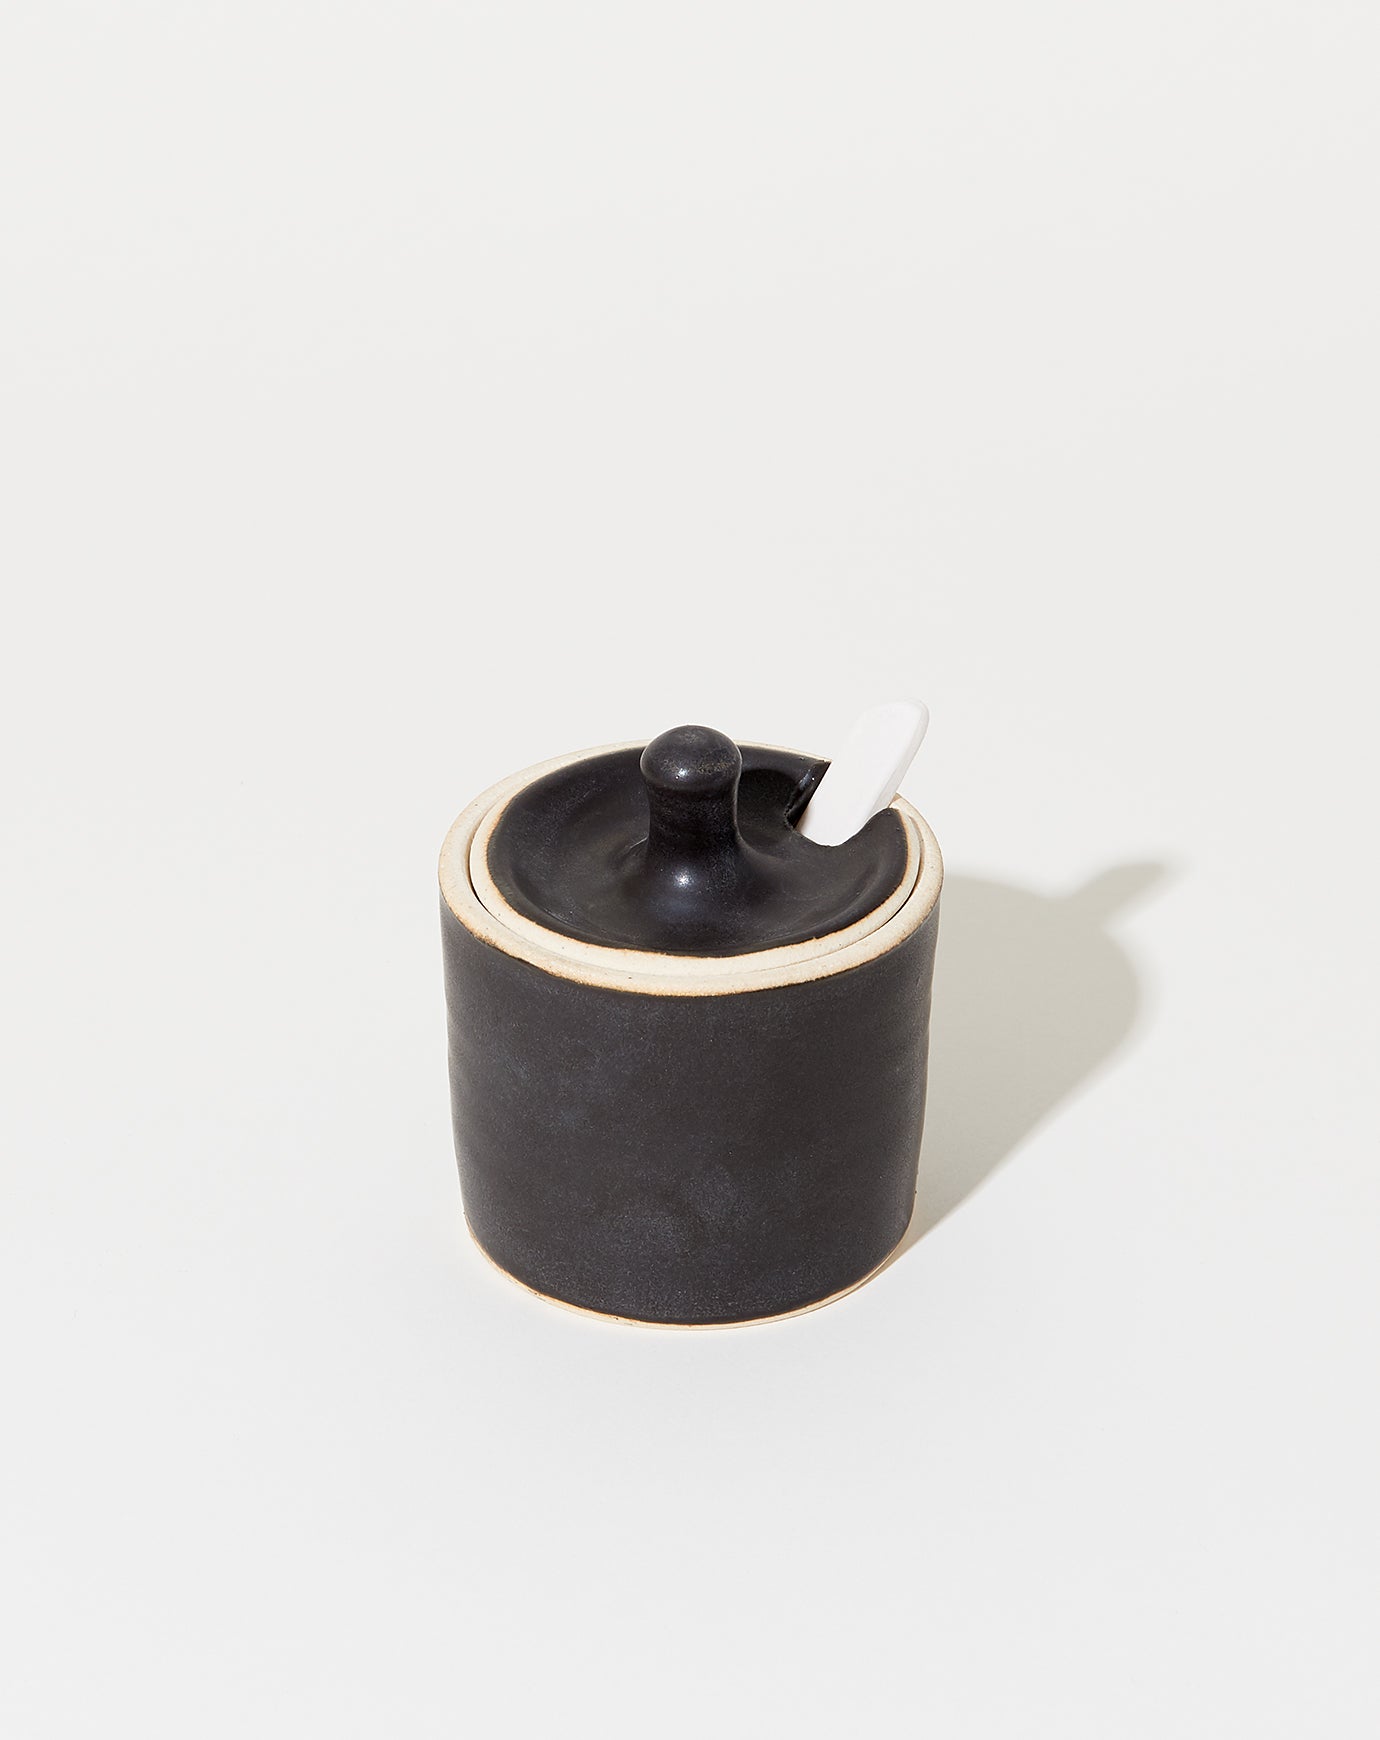 Sheldon Ceramics Farmhouse Spice Jar in Satin Black